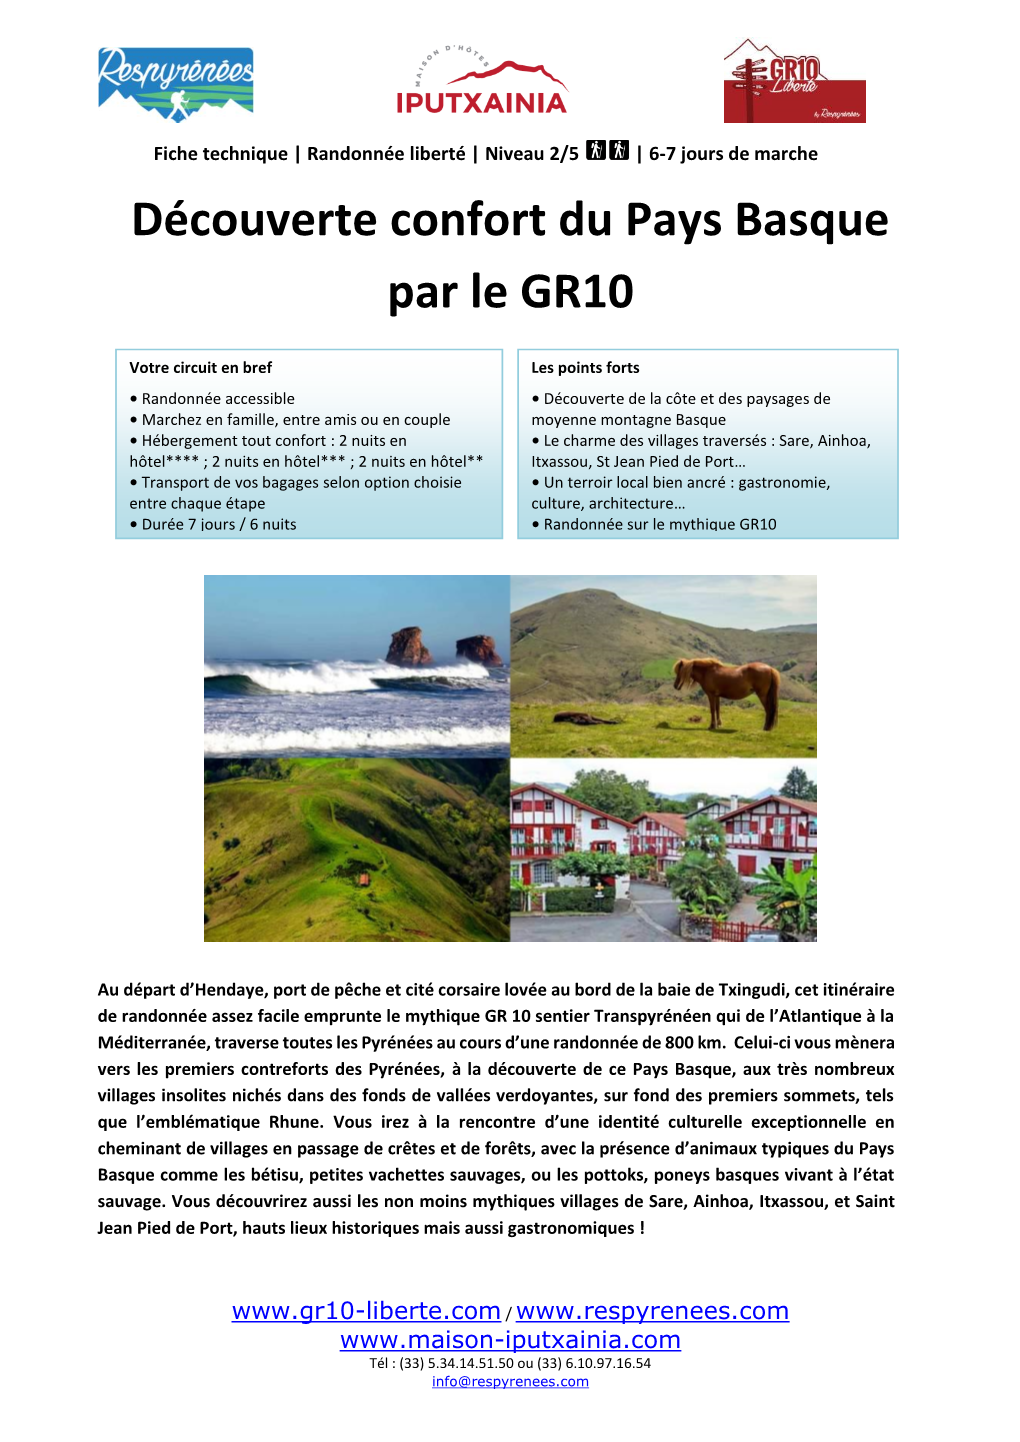 Découverte Confort Du Pays Basque Par Le GR10